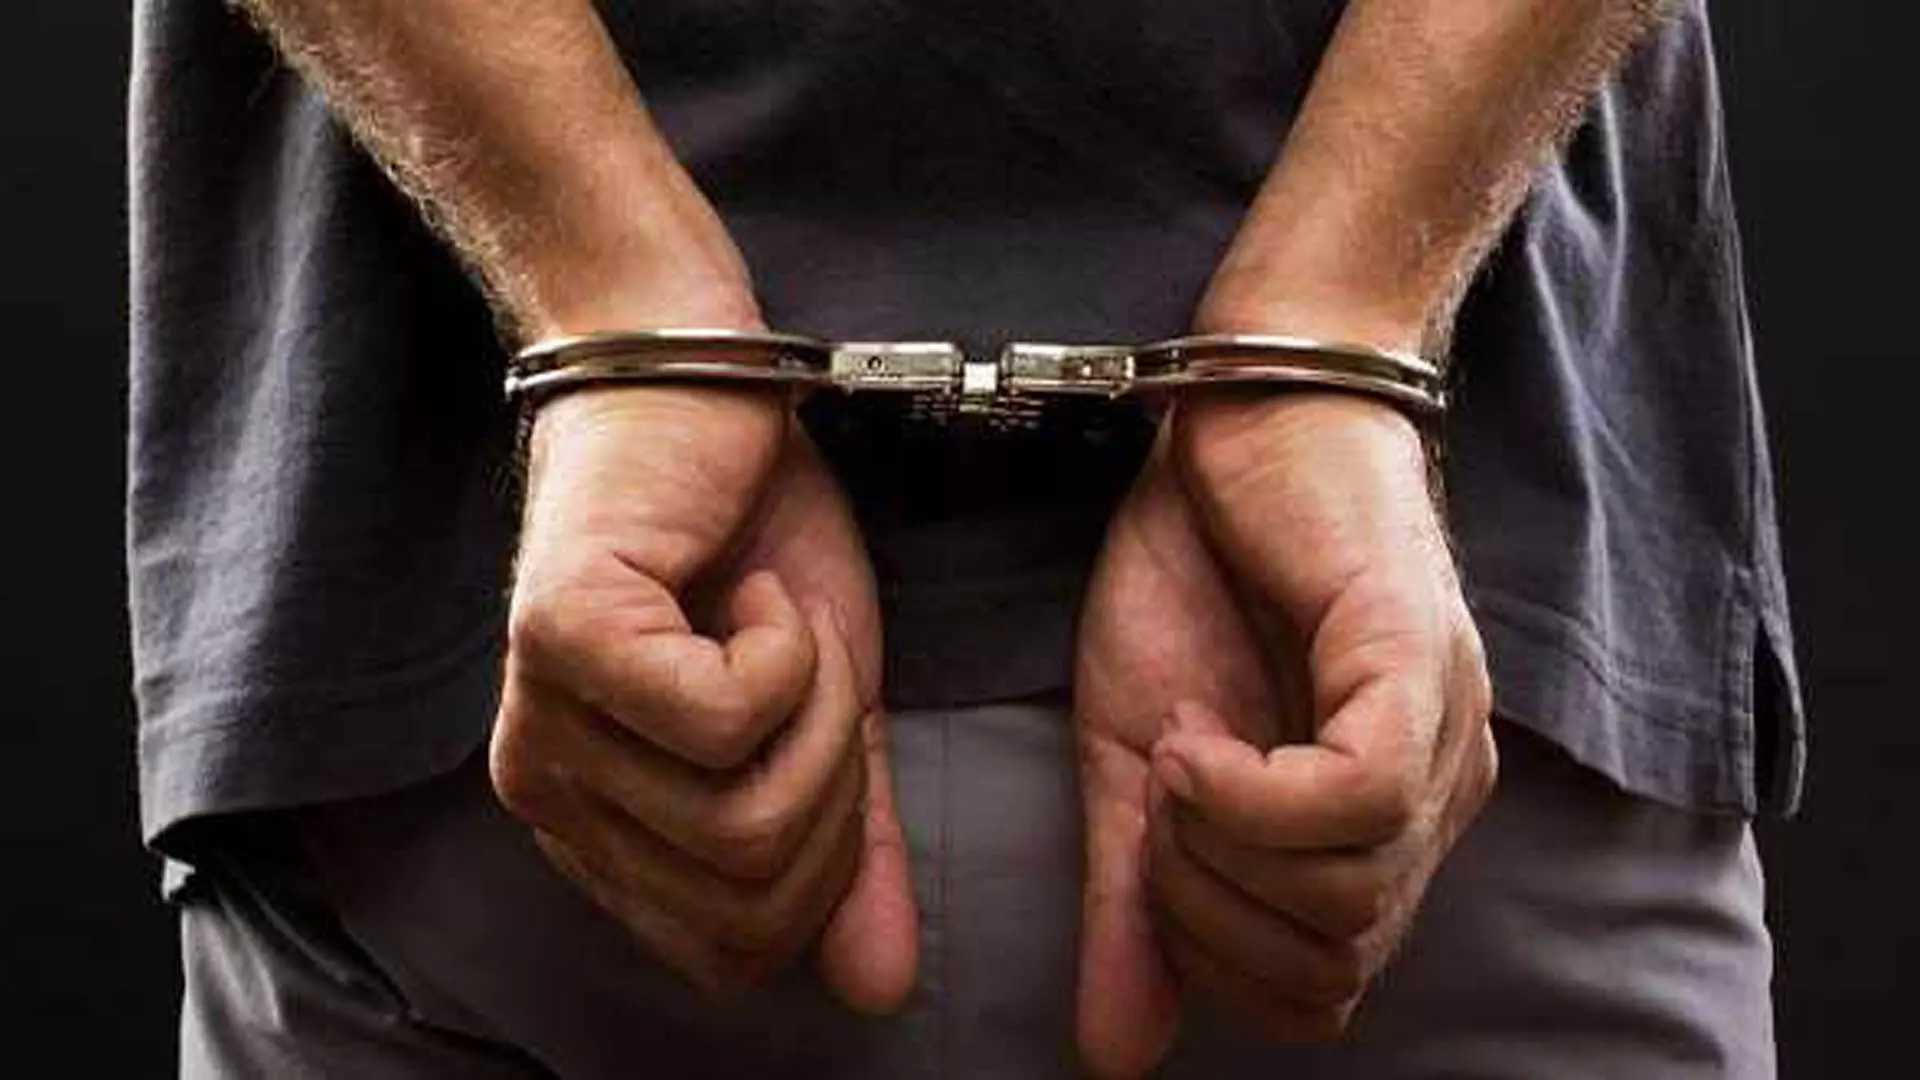 MUMBAI: एनसीबी ने मेफेड्रोन तस्करी सिंडिकेट के प्रमुख सदस्य को गिरफ्तार किया